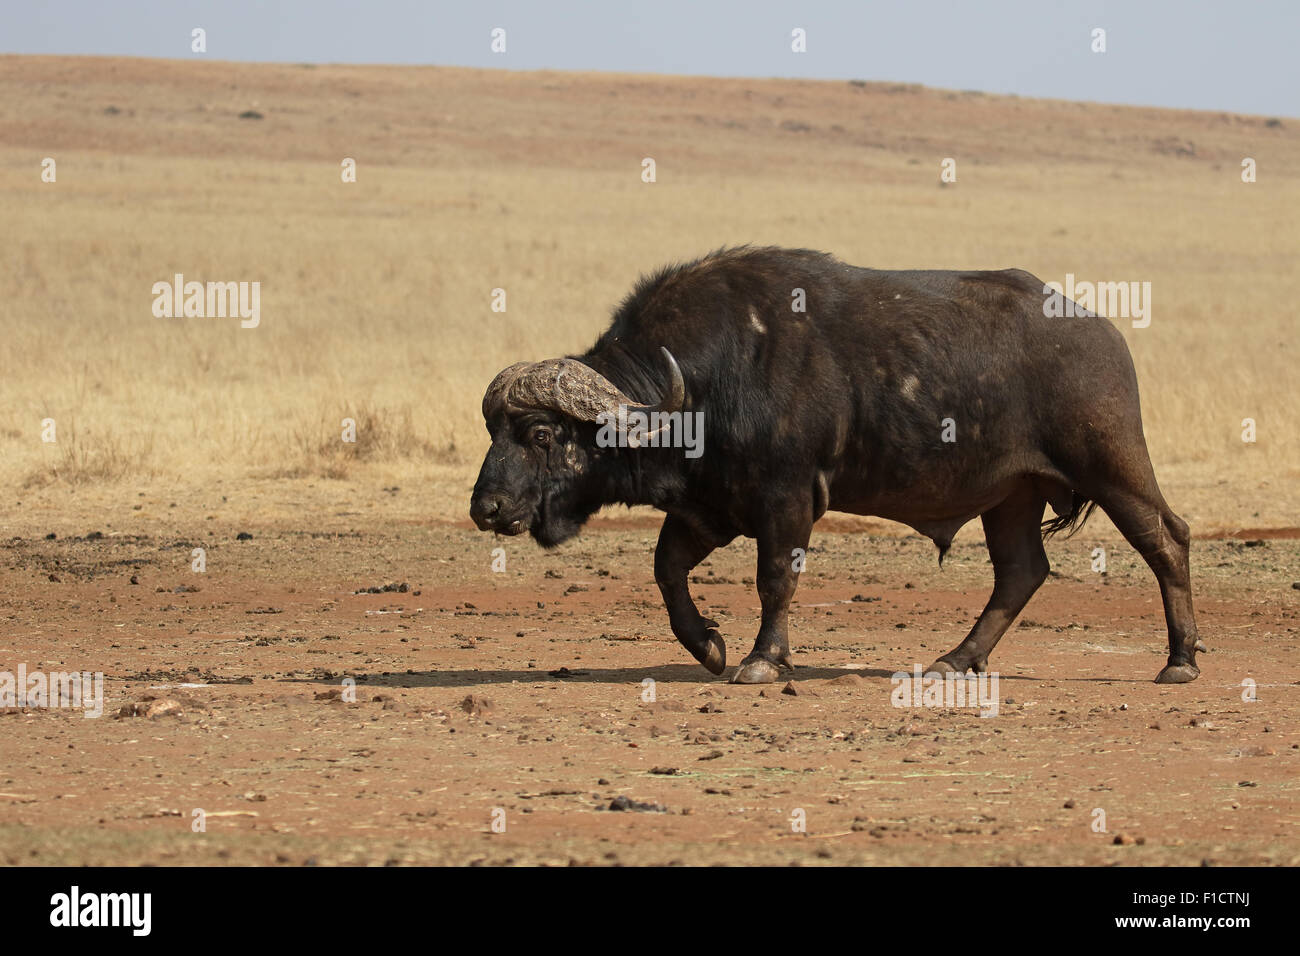 El búfalo africano, Syncerus caffer, único mamífero sobre el césped, Sudáfrica, agosto de 2015 Foto de stock